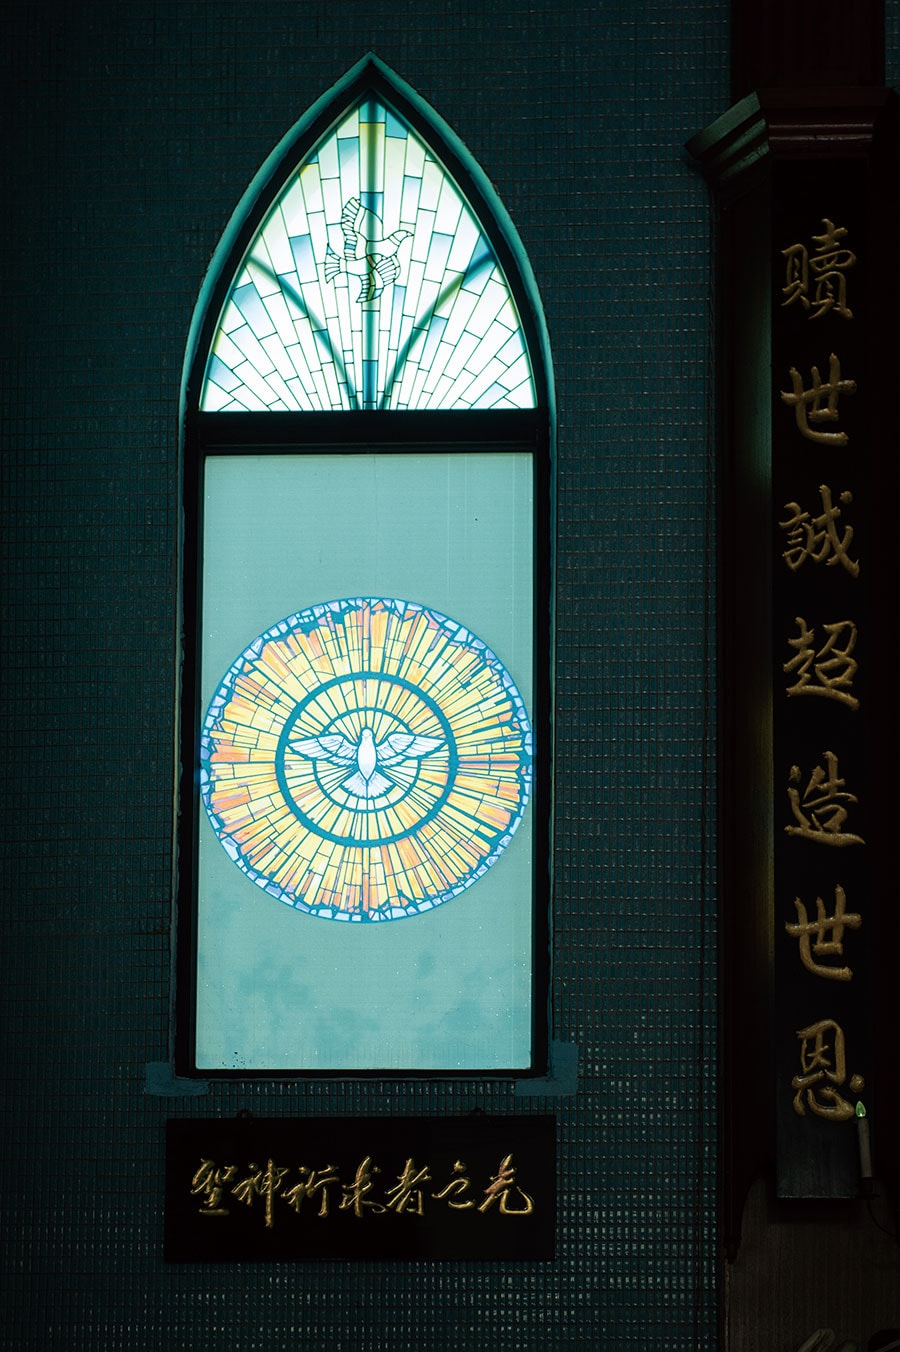 左：羅東聖母升天堂でステンドグラスと中国語の取り合わせがエキゾチック。 
右：羅東聖母升天堂は羅東エリアで最大のカトリック教会。